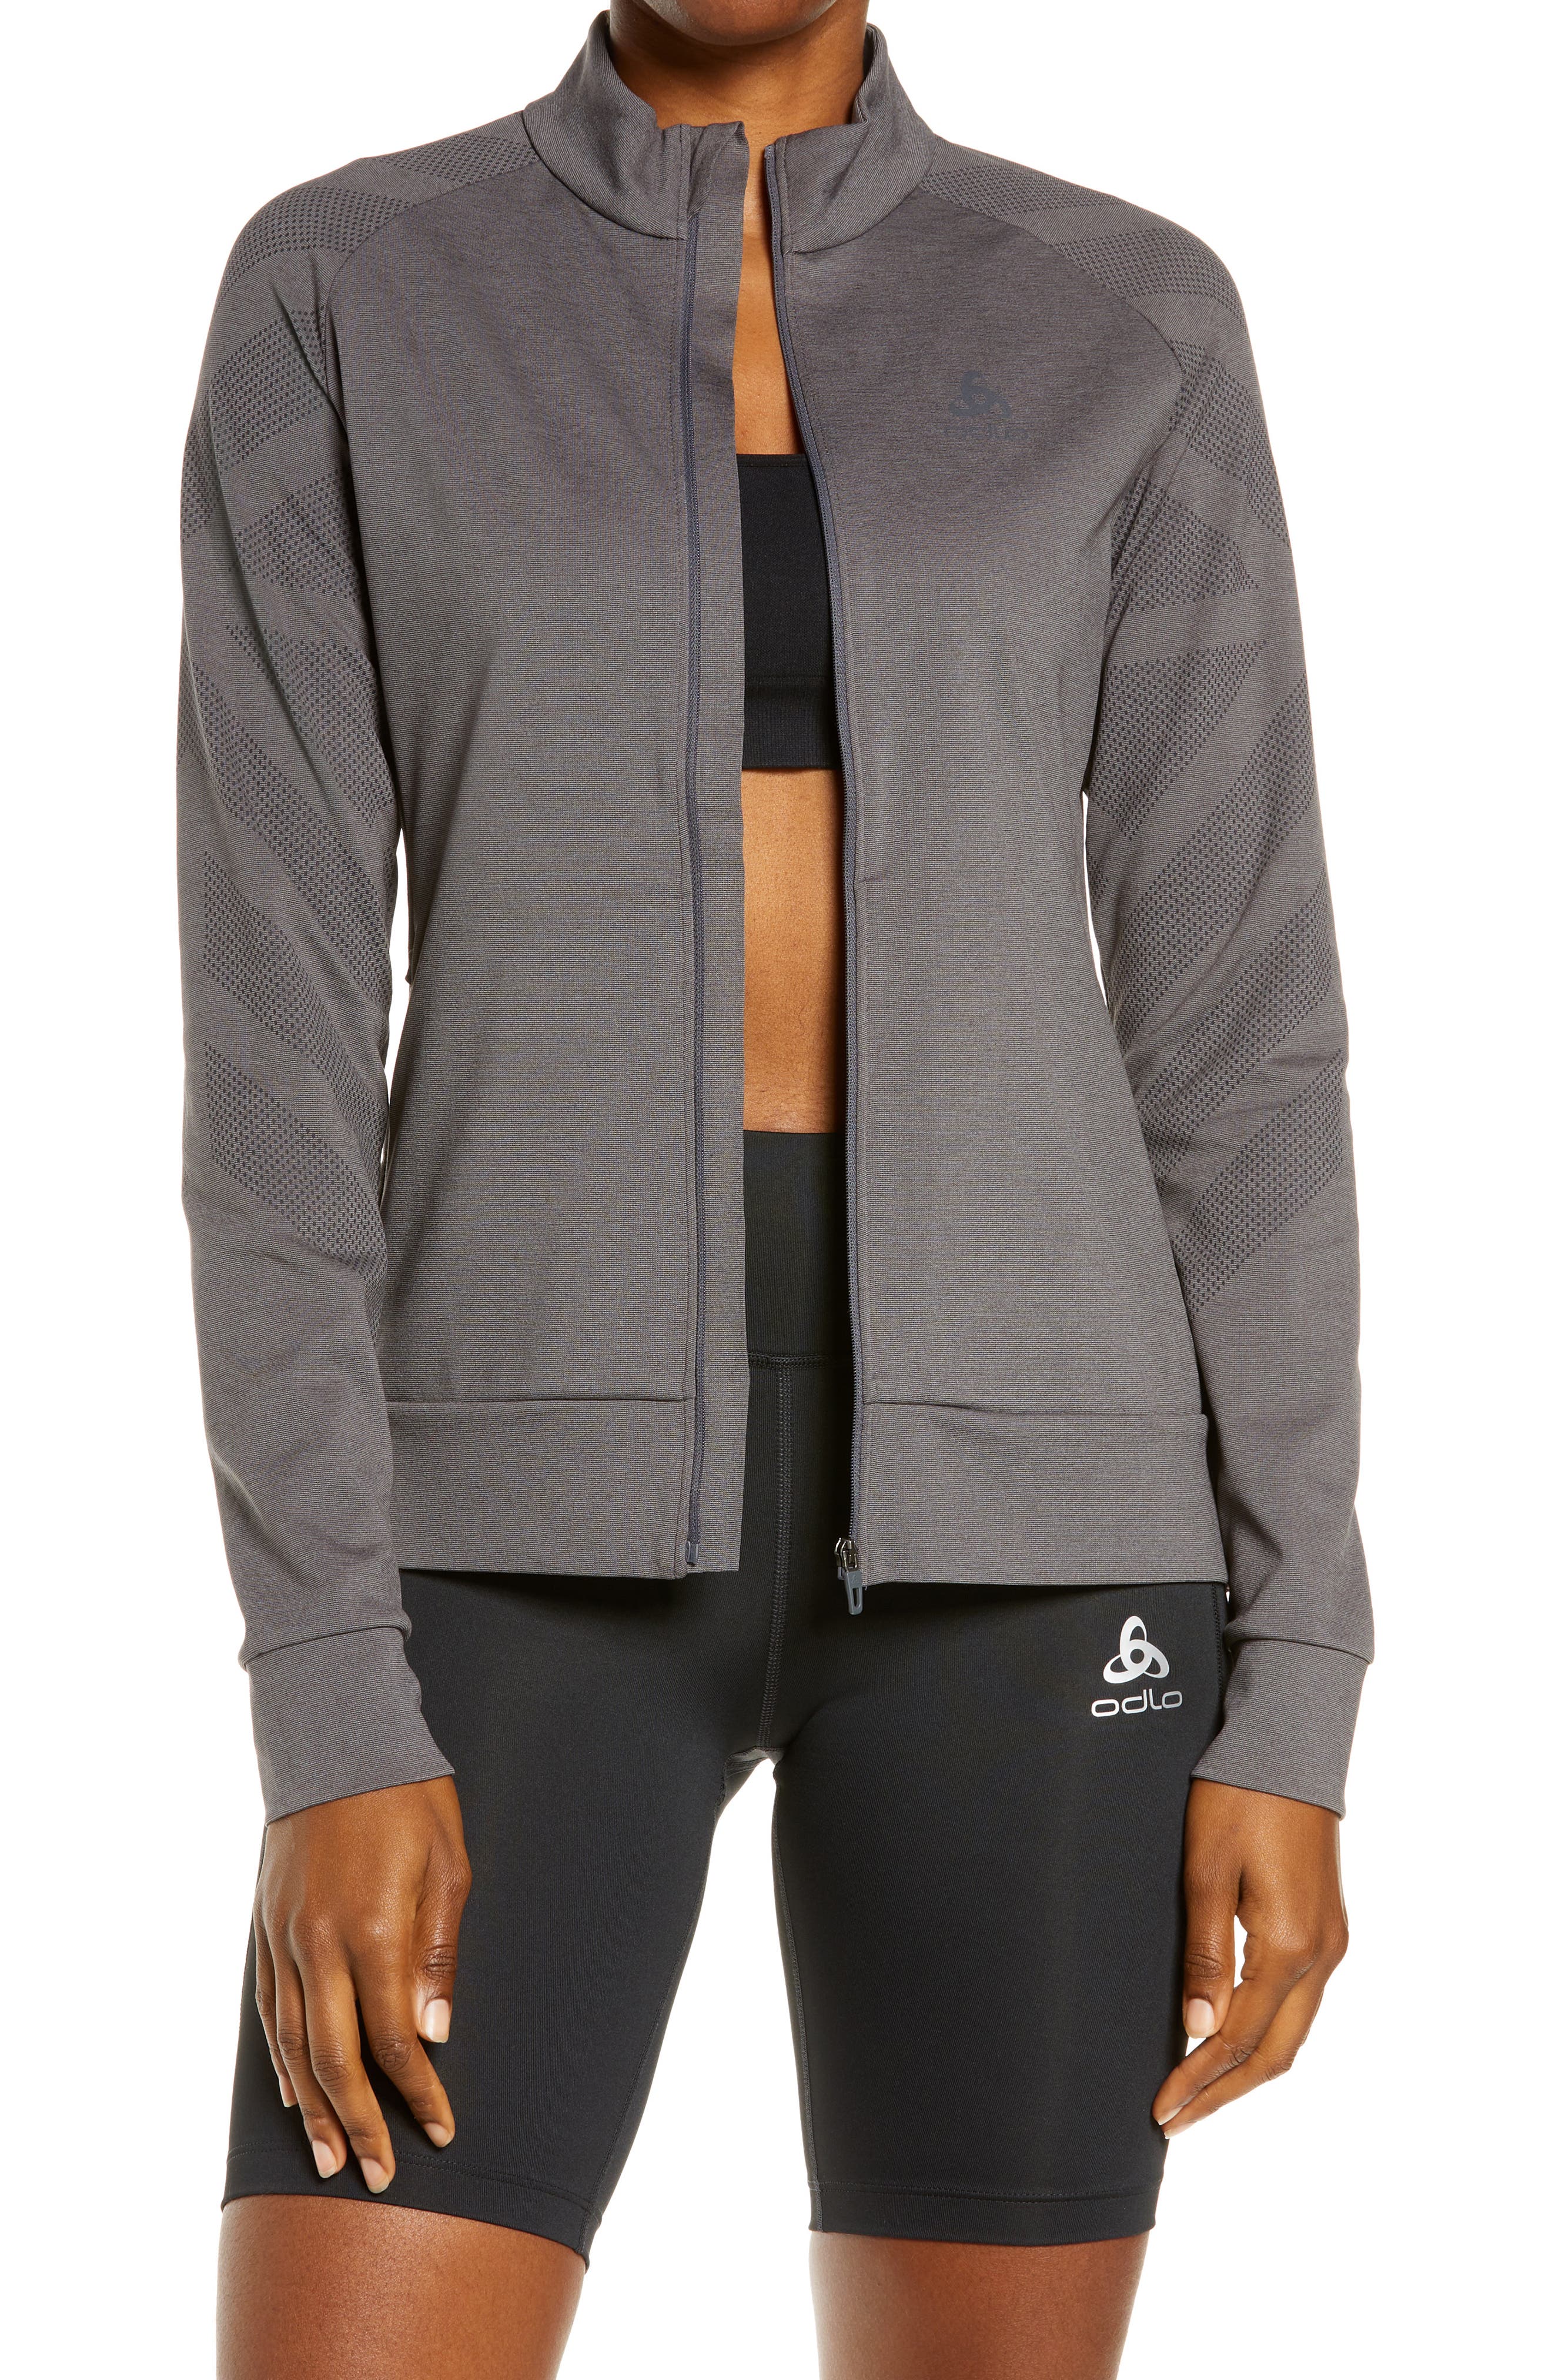 ODLO Jacket Ladies Womens Outdoor Running Active Sports Long Sleeve Jersey Zip 